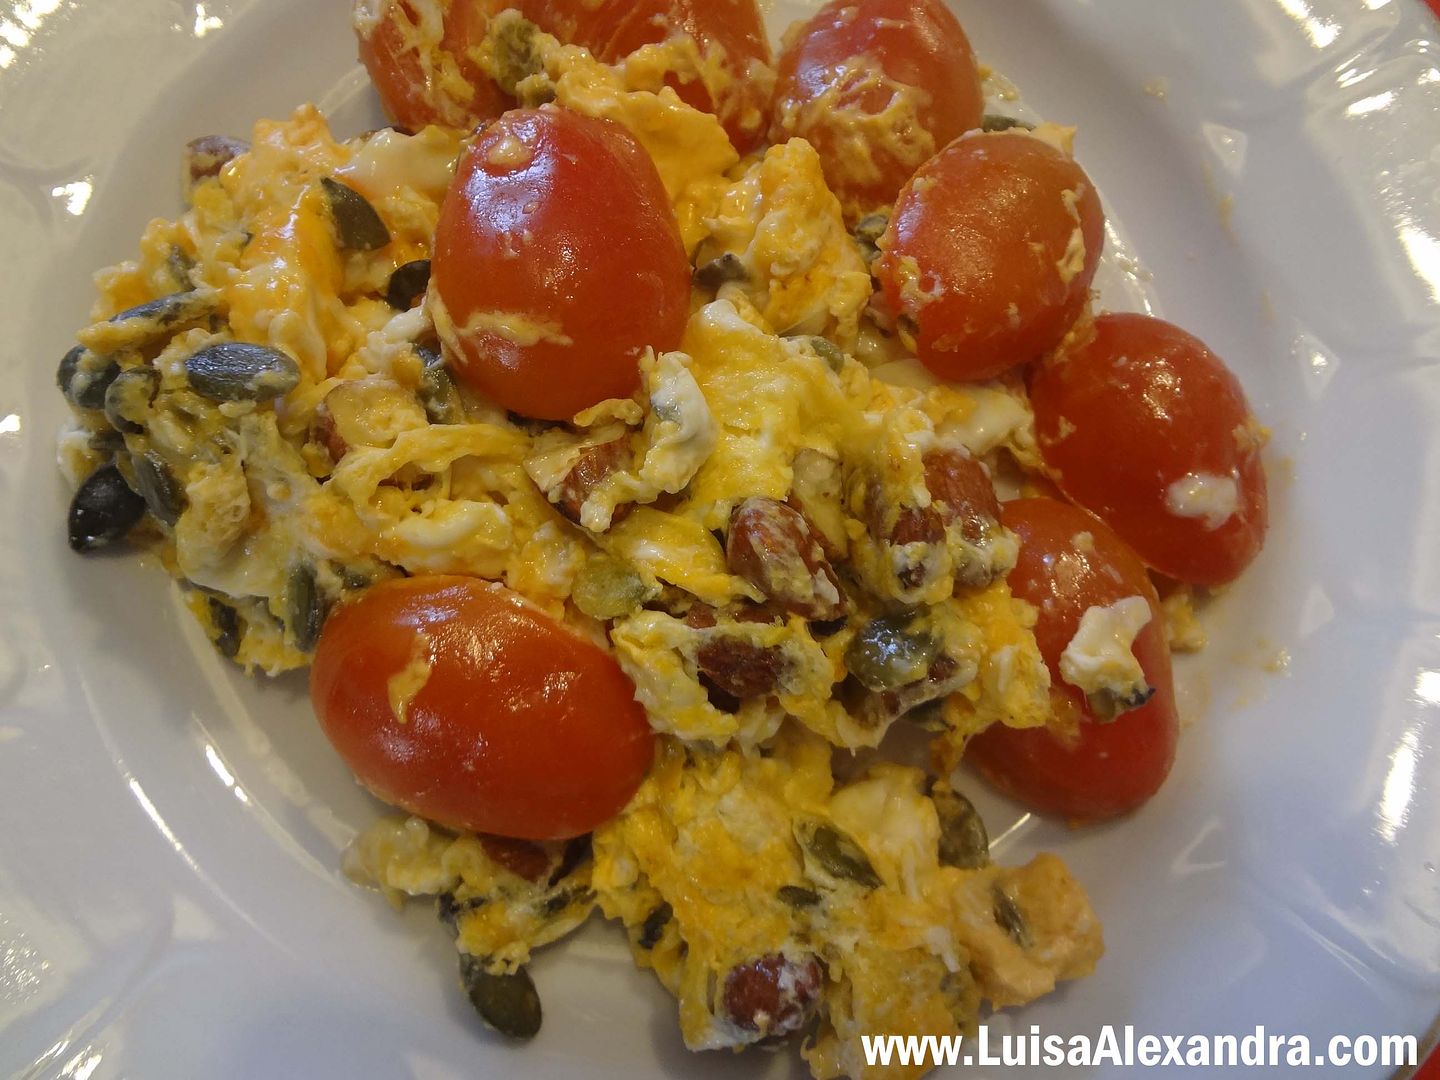 Ovos Mexidos com Tomate Berry, amendoas, sementes de abobora e queijo cool photo file-758.jpg